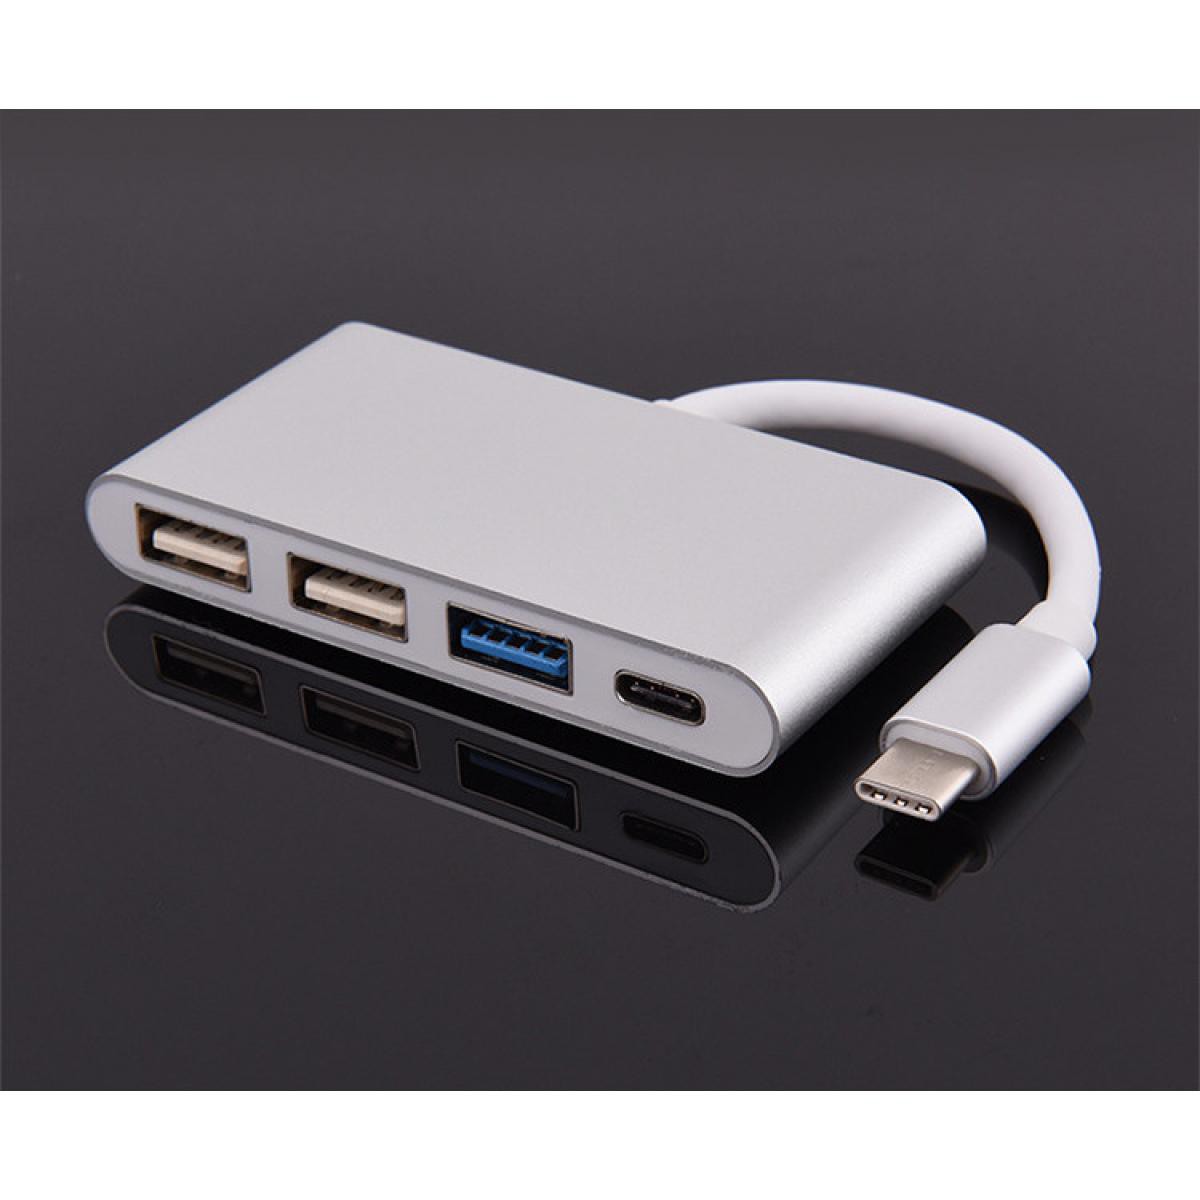 Shot - Multi Adaptateur 4 en 1 Type C pour ONEPLUS 7 PLUS Smartphone Hub 2 ports USB 2.0 1 Port USB 3.0 (ARGENT) - Hub